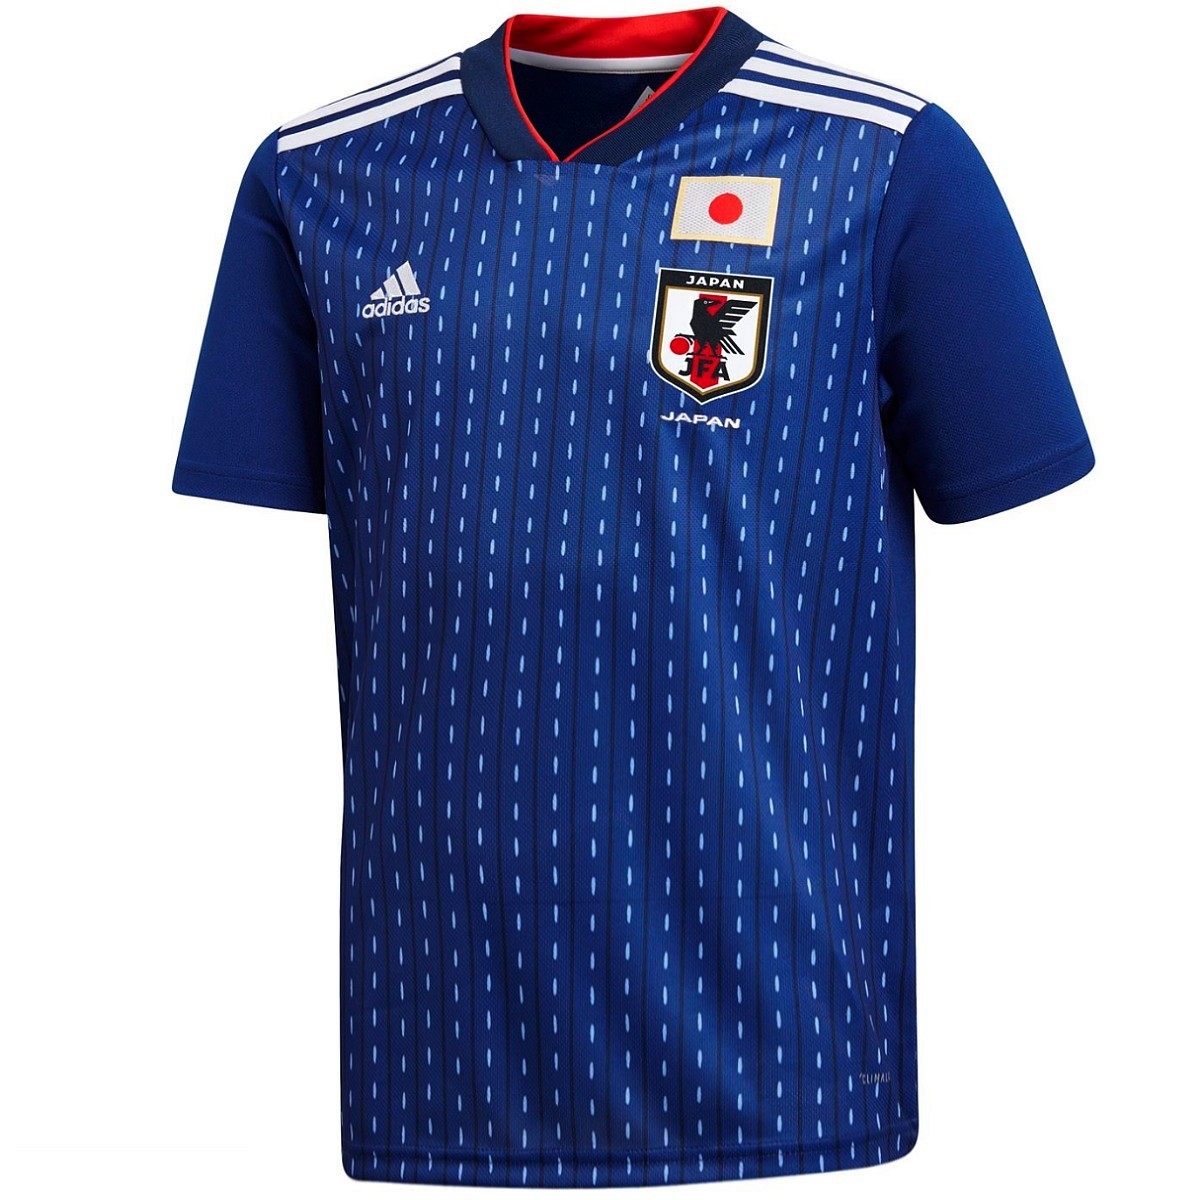 Entrada Escudero Necesario Camiseta futbol seleccion Japon Copa del Mundo 2018 primera - Adidas